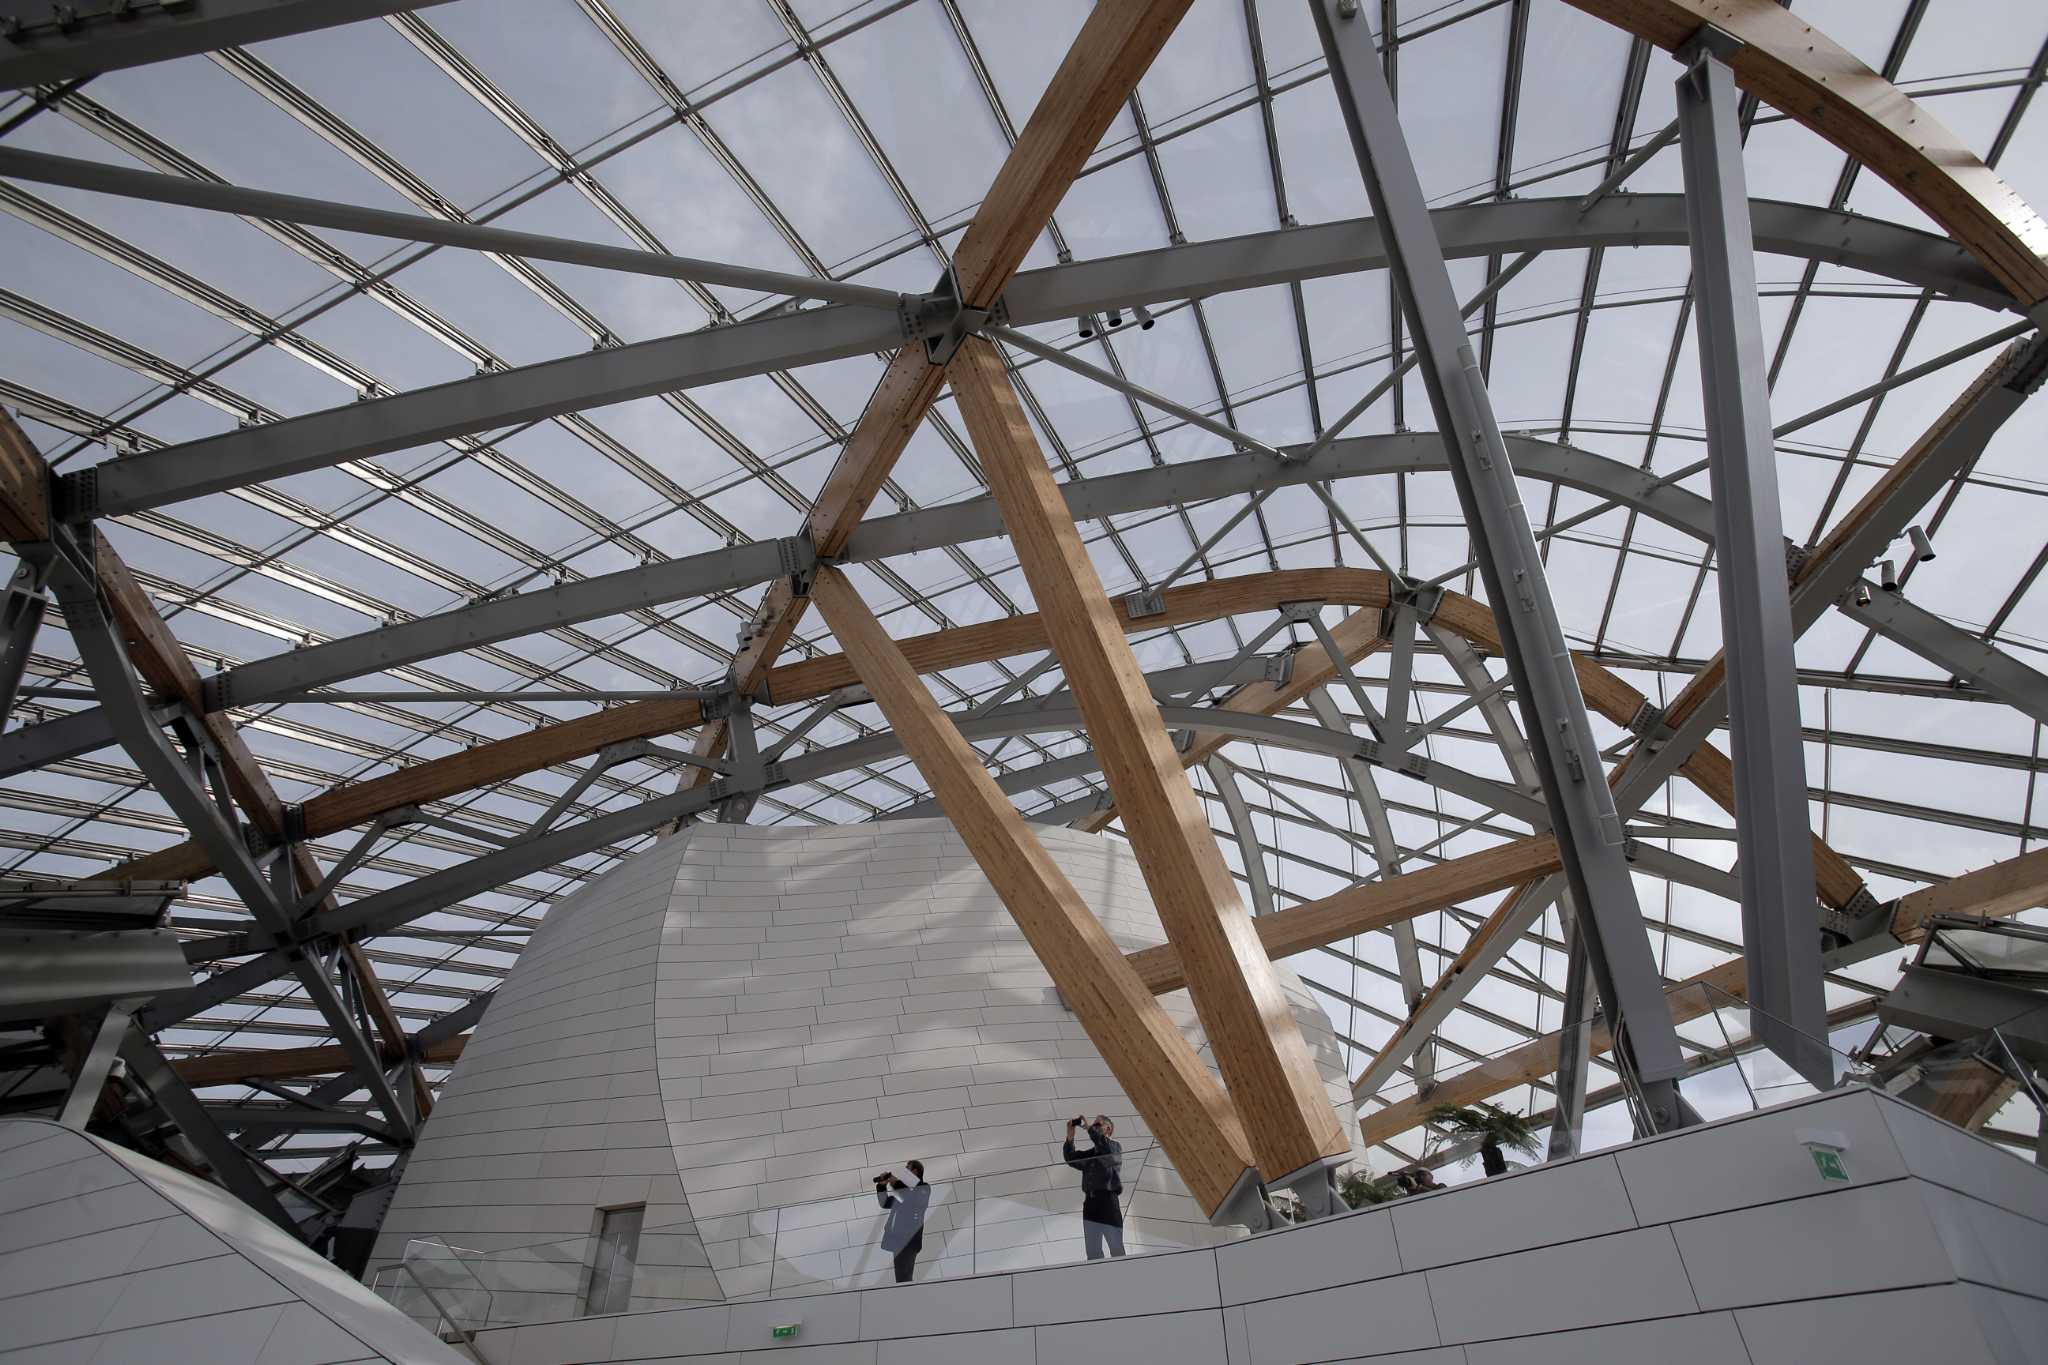 Louis Vuitton Opens New Exhibition Space and Café at Paris Headquarters